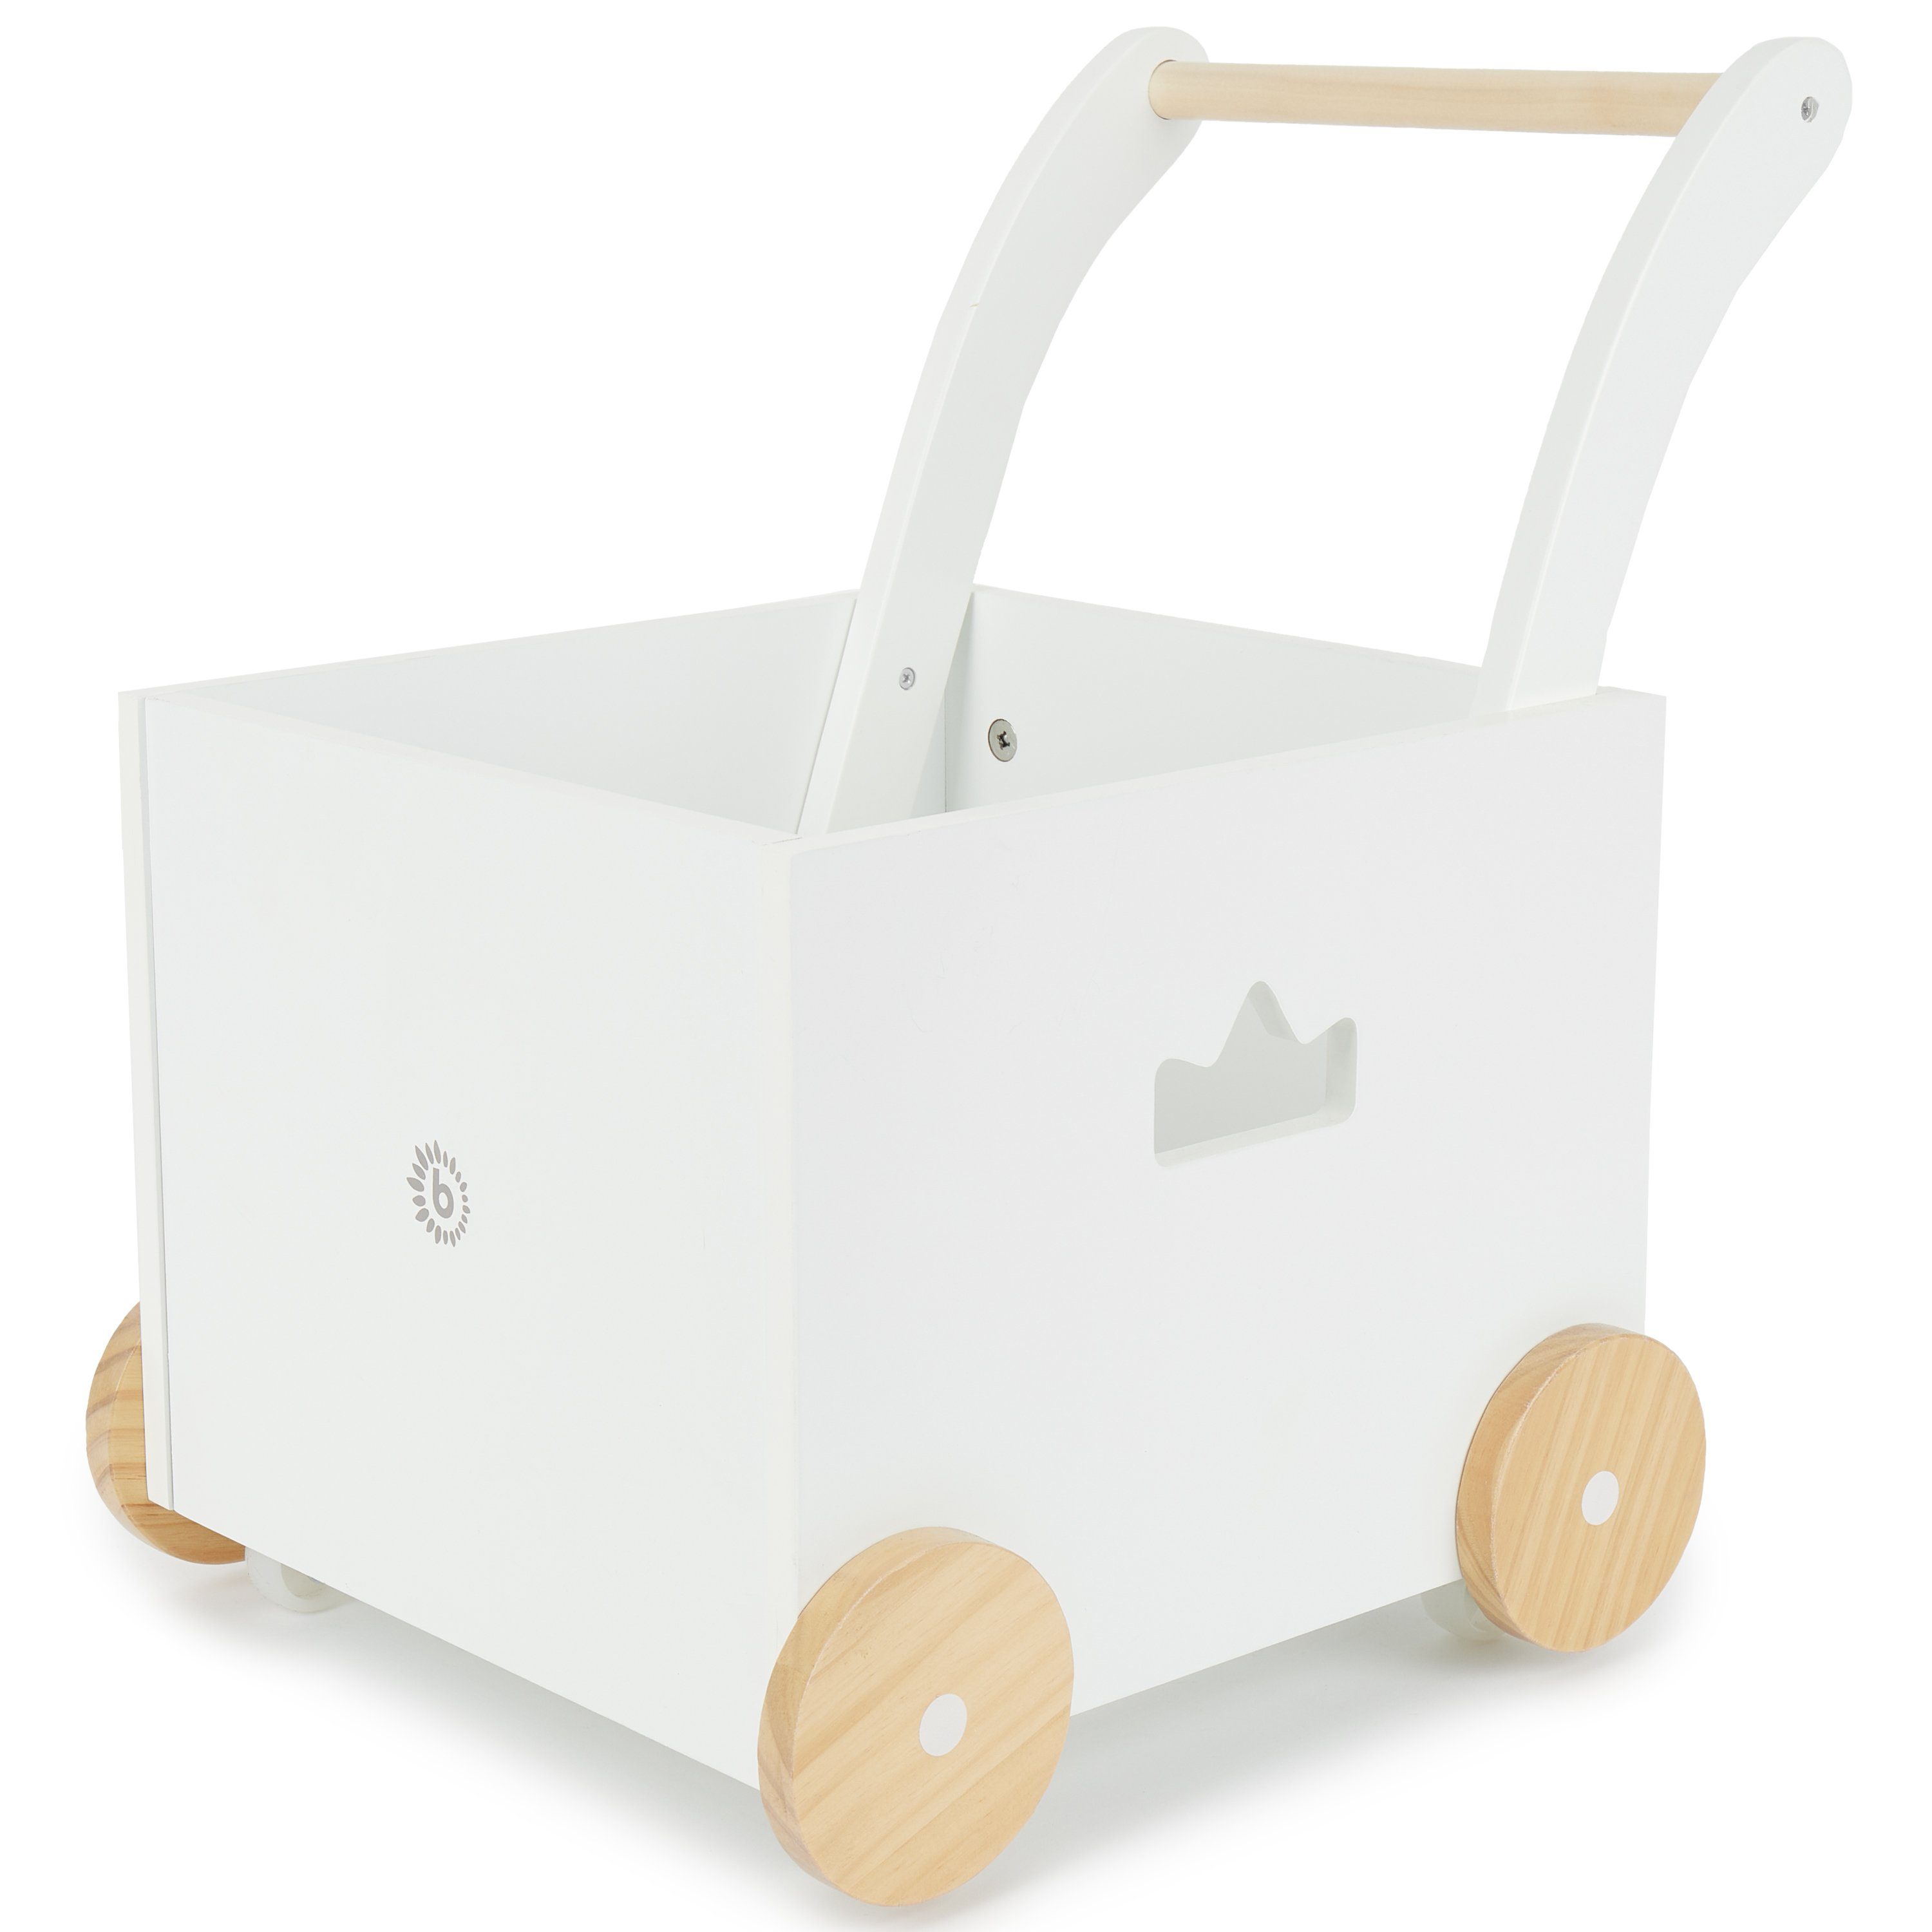 BIECO Lauflernhilfe Bieco Lauflernwagen Holz ab 1 Jahr Multifunktionale Baby Lauflernhilfe Laufwagen für Babys in schlichtem Design Baby Gehhilfe Lauflernhilfe für Babys Baby Laufwagen mit Stauraum